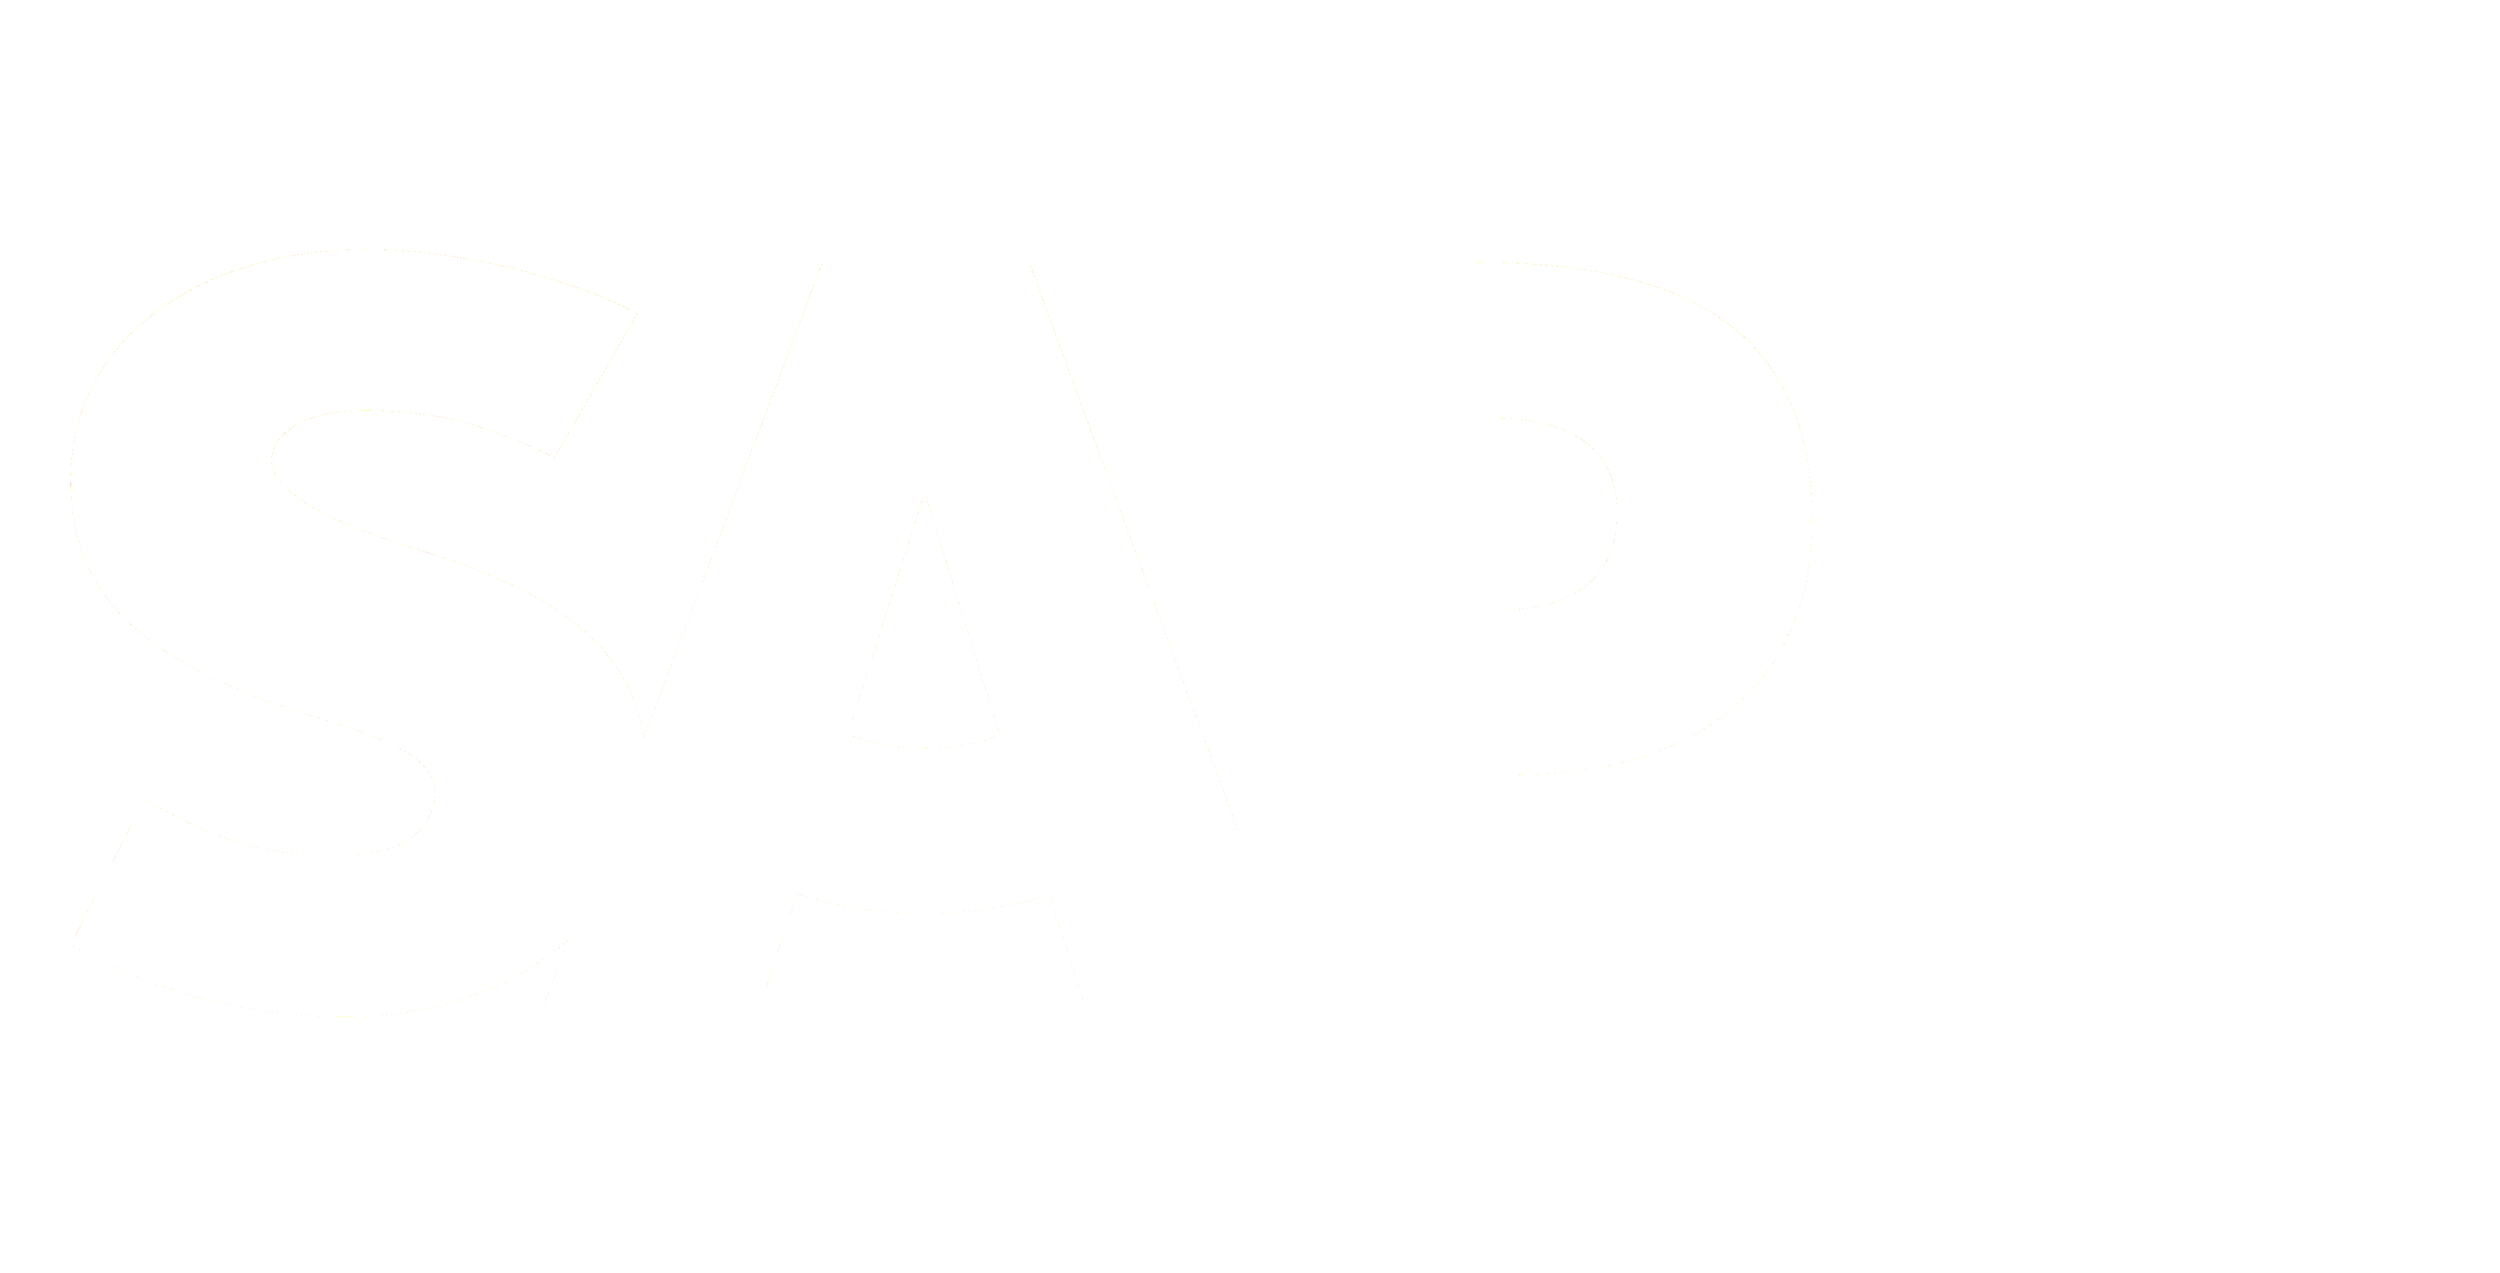 SAP_logo.png